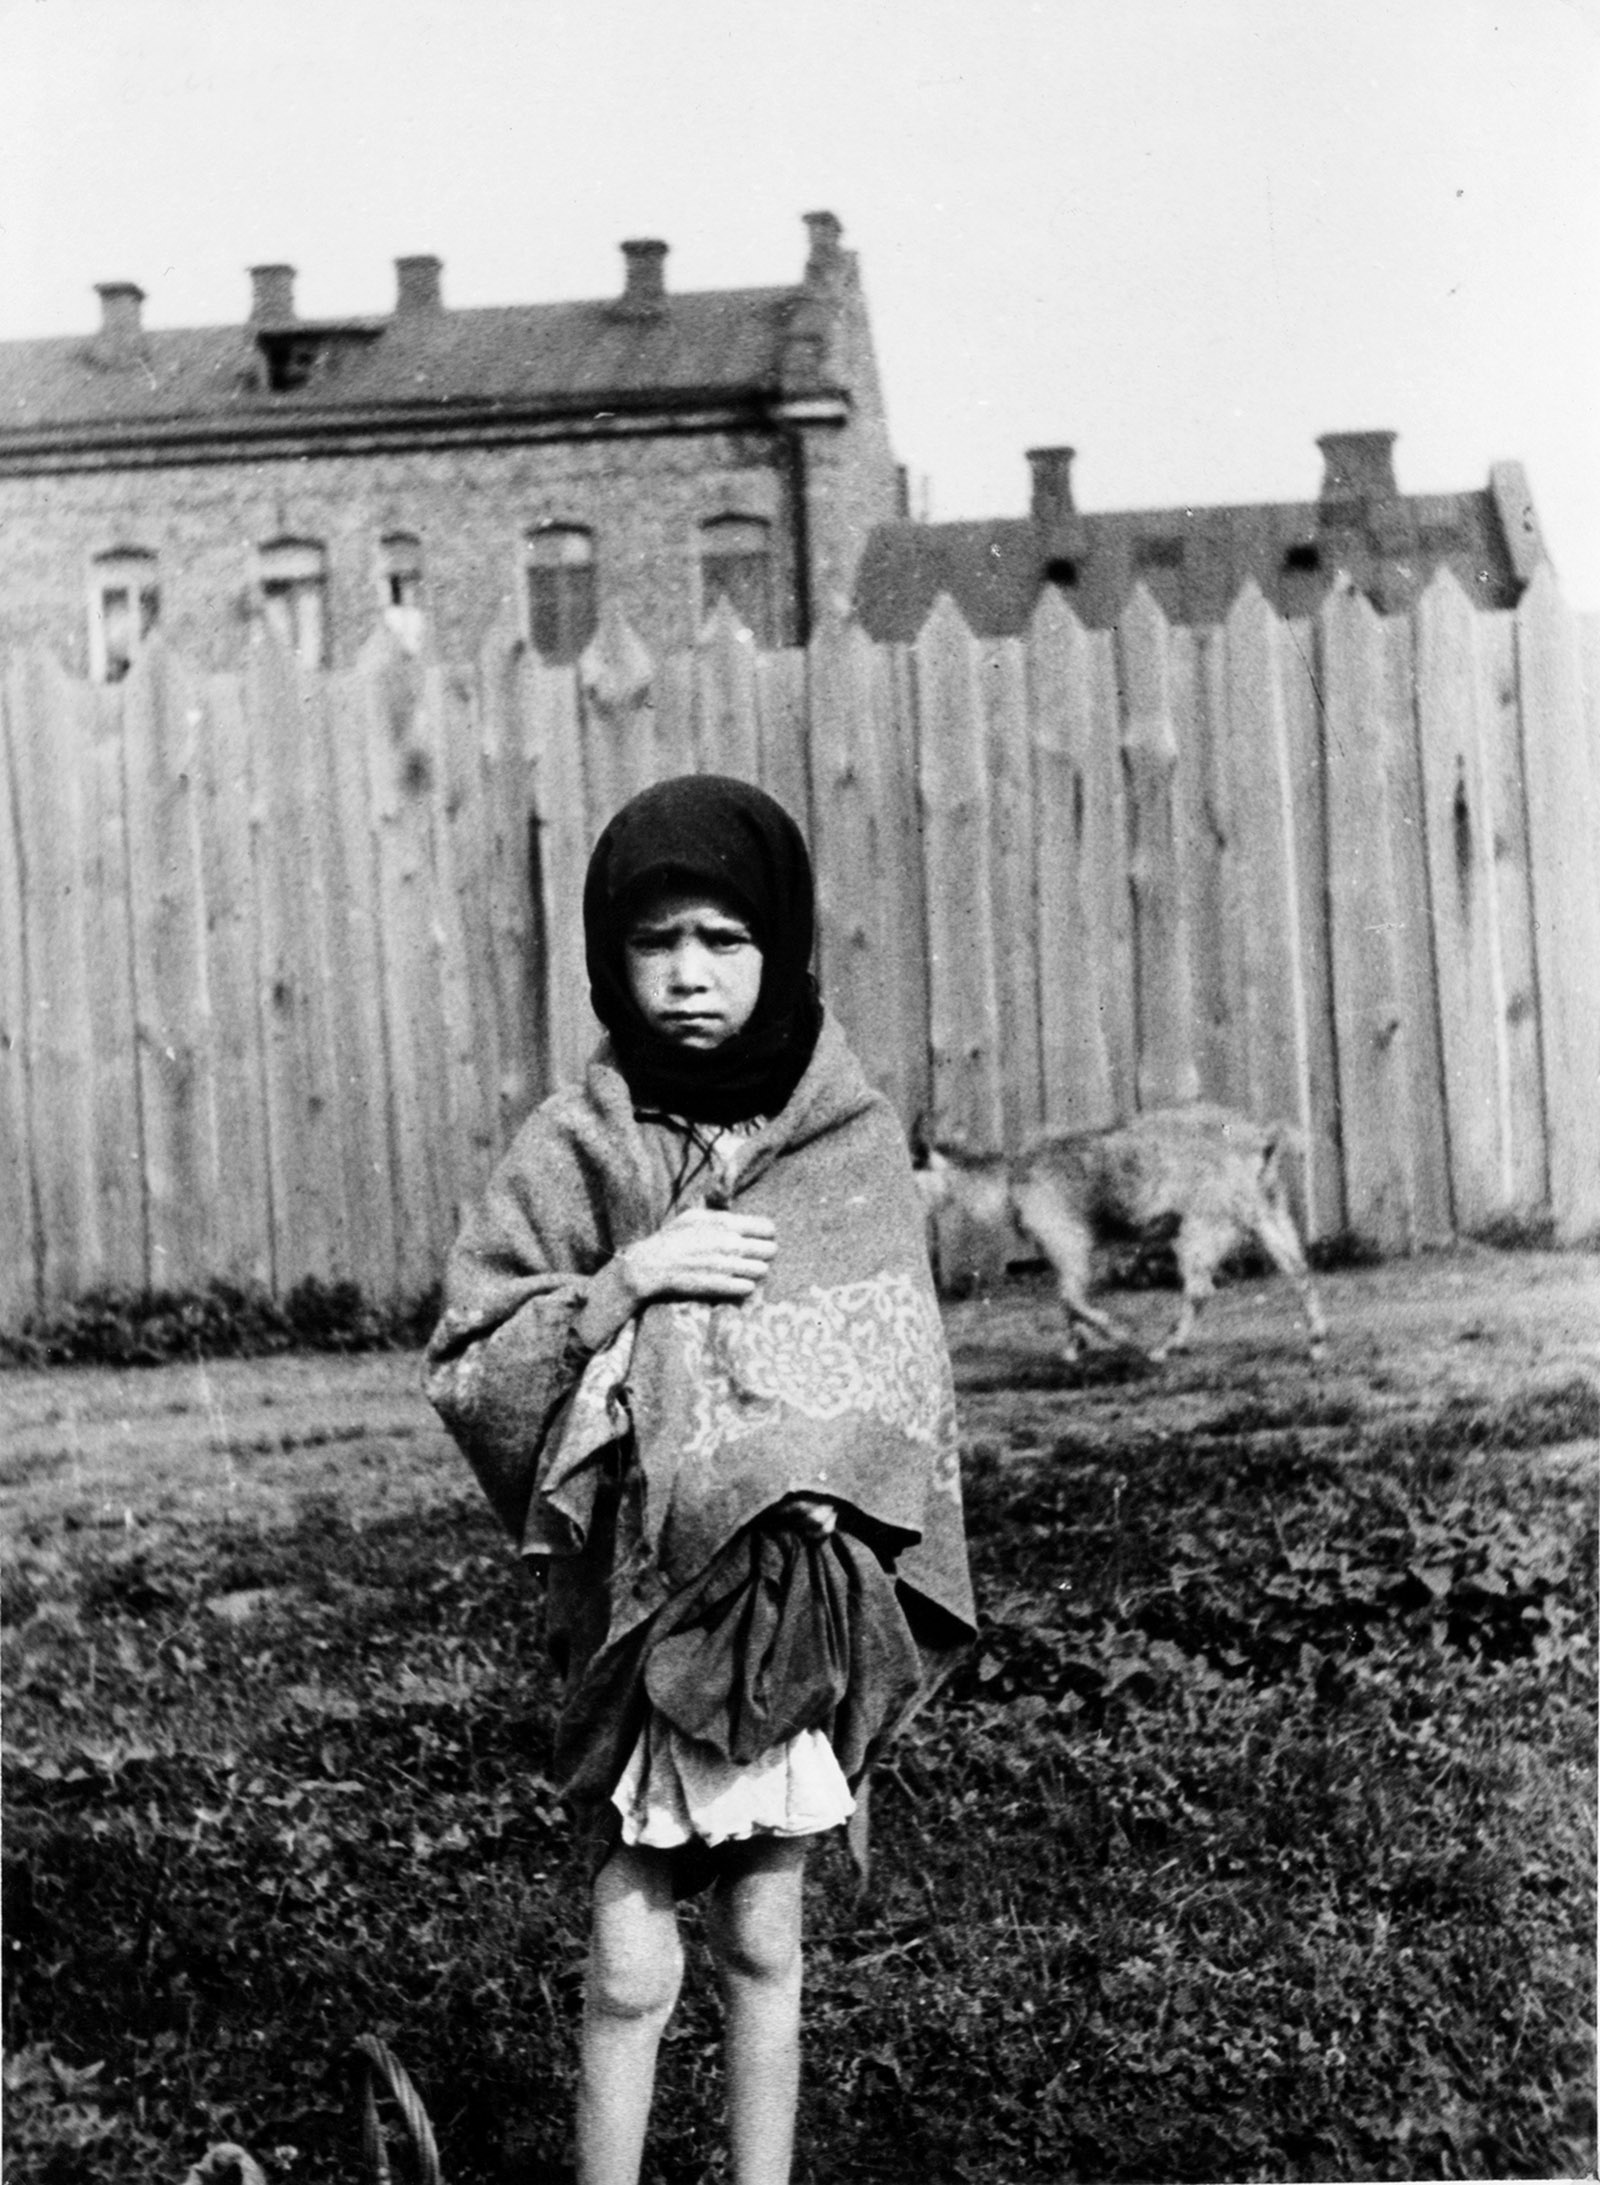 A peasant girl during the Holodomor, Ukraine’s Stalin-era famine, Kharkiv, 1933